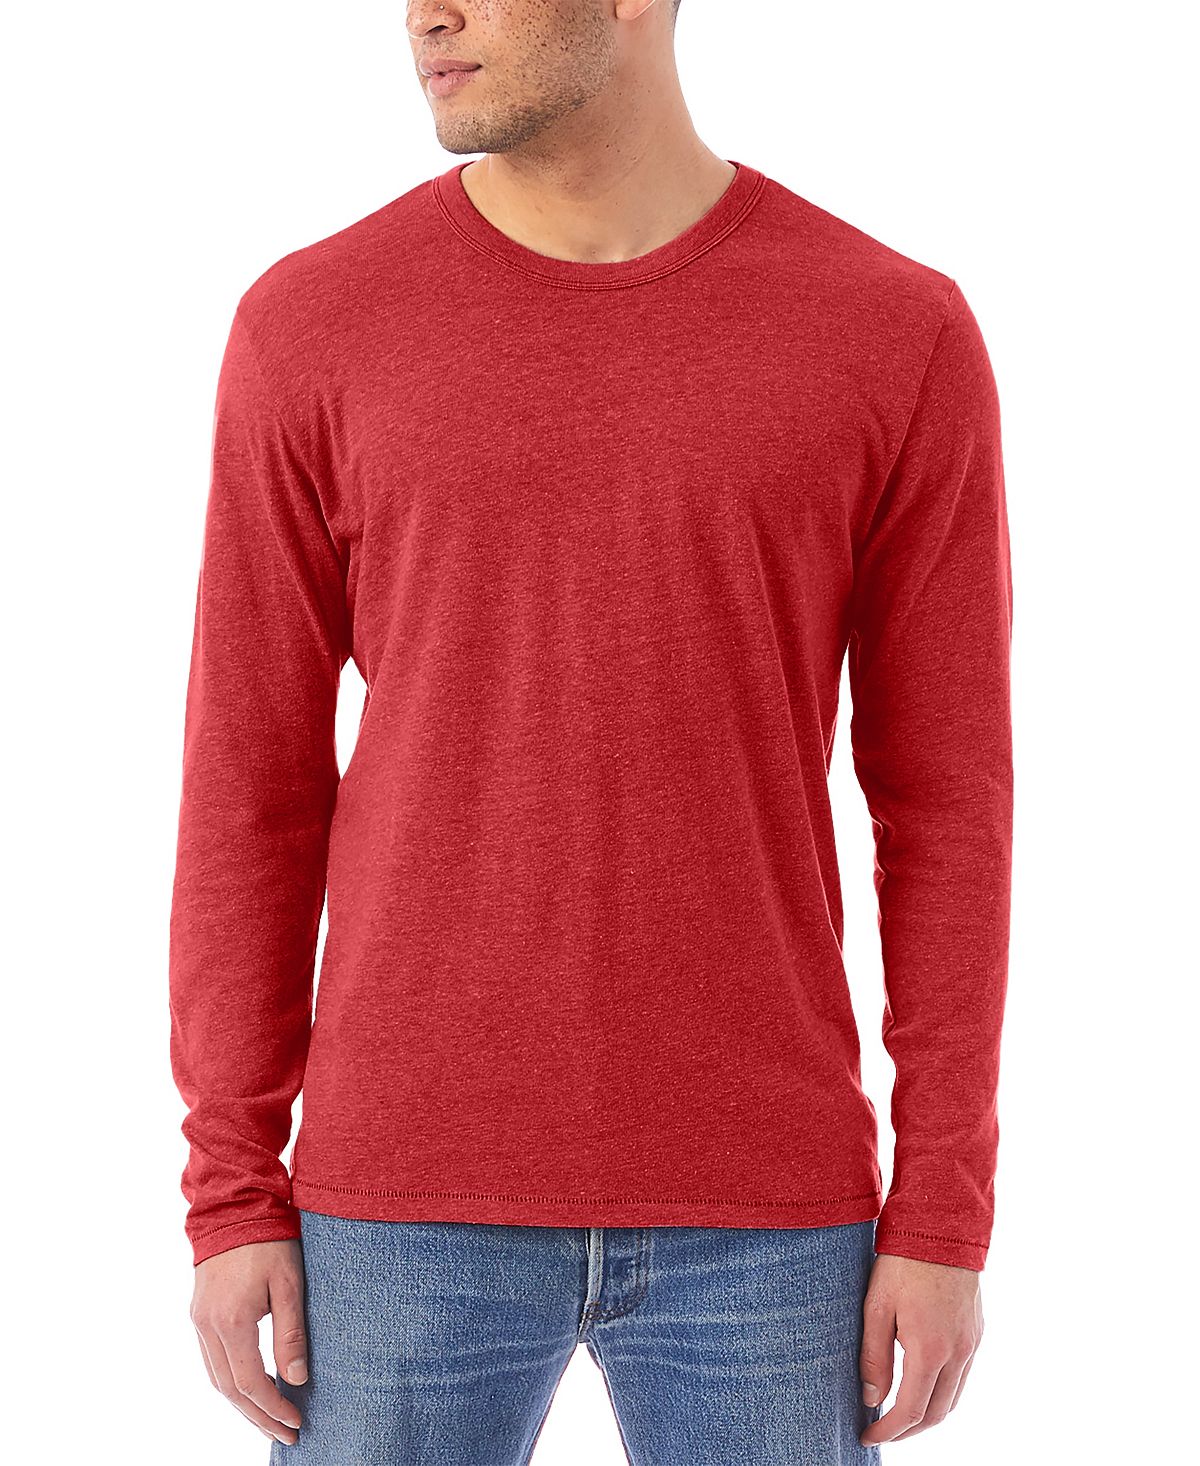 Мужская футболка the keeper Alternative Apparel, красный мужская футболка the beagles l красный